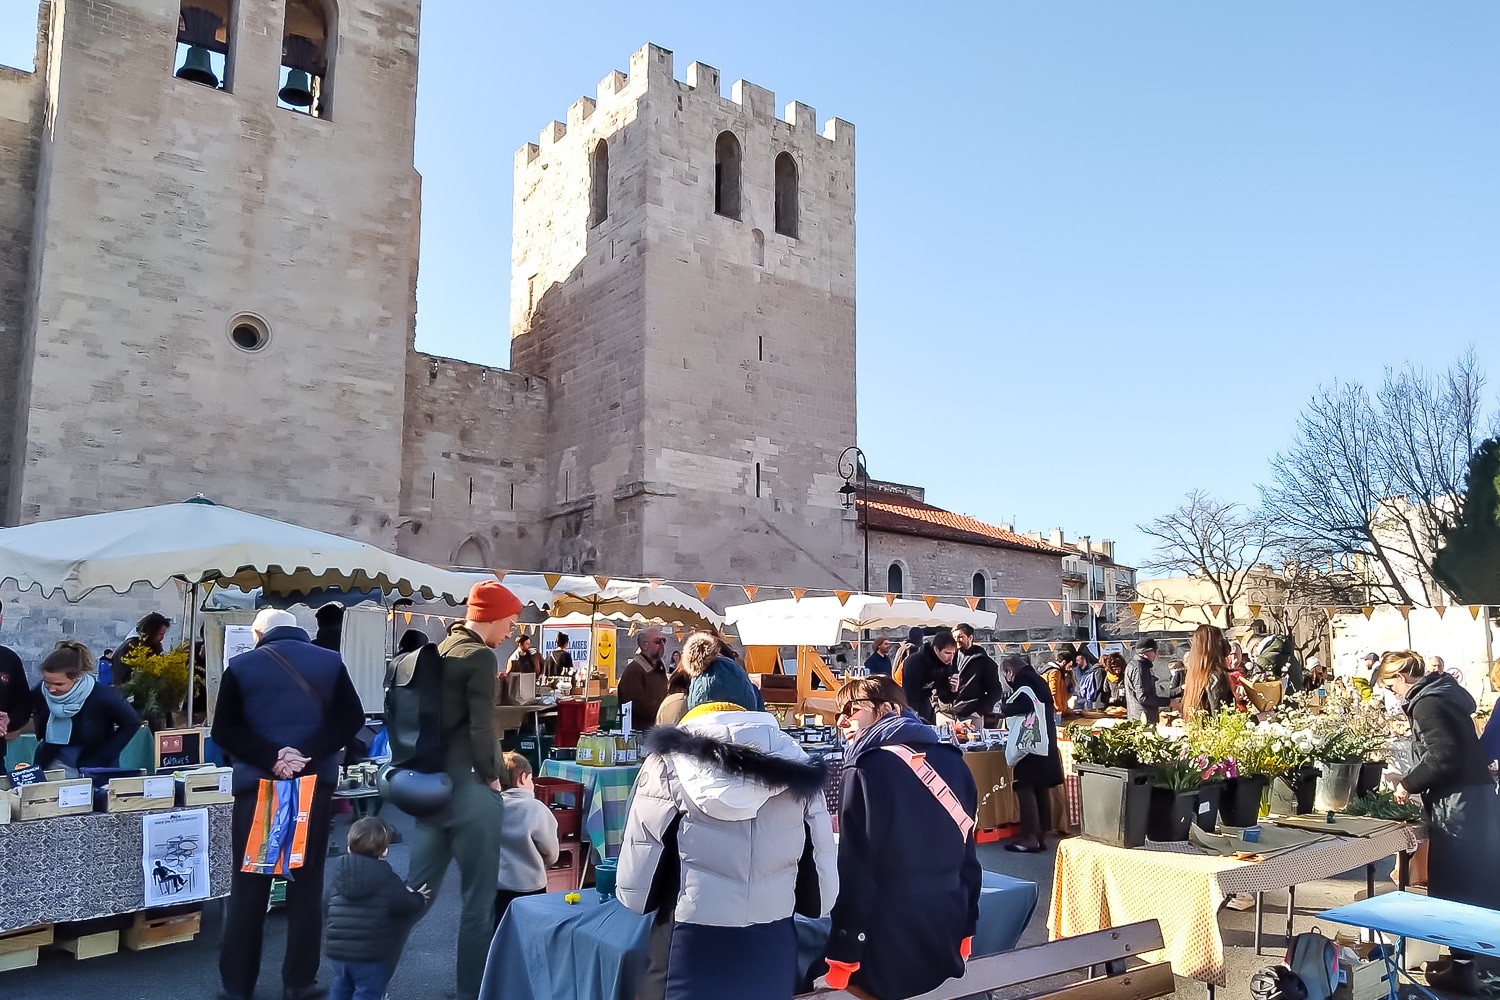 saint-victor, Le marché de Saint-Victor revient dimanche avec guinguette et animations, Made in Marseille